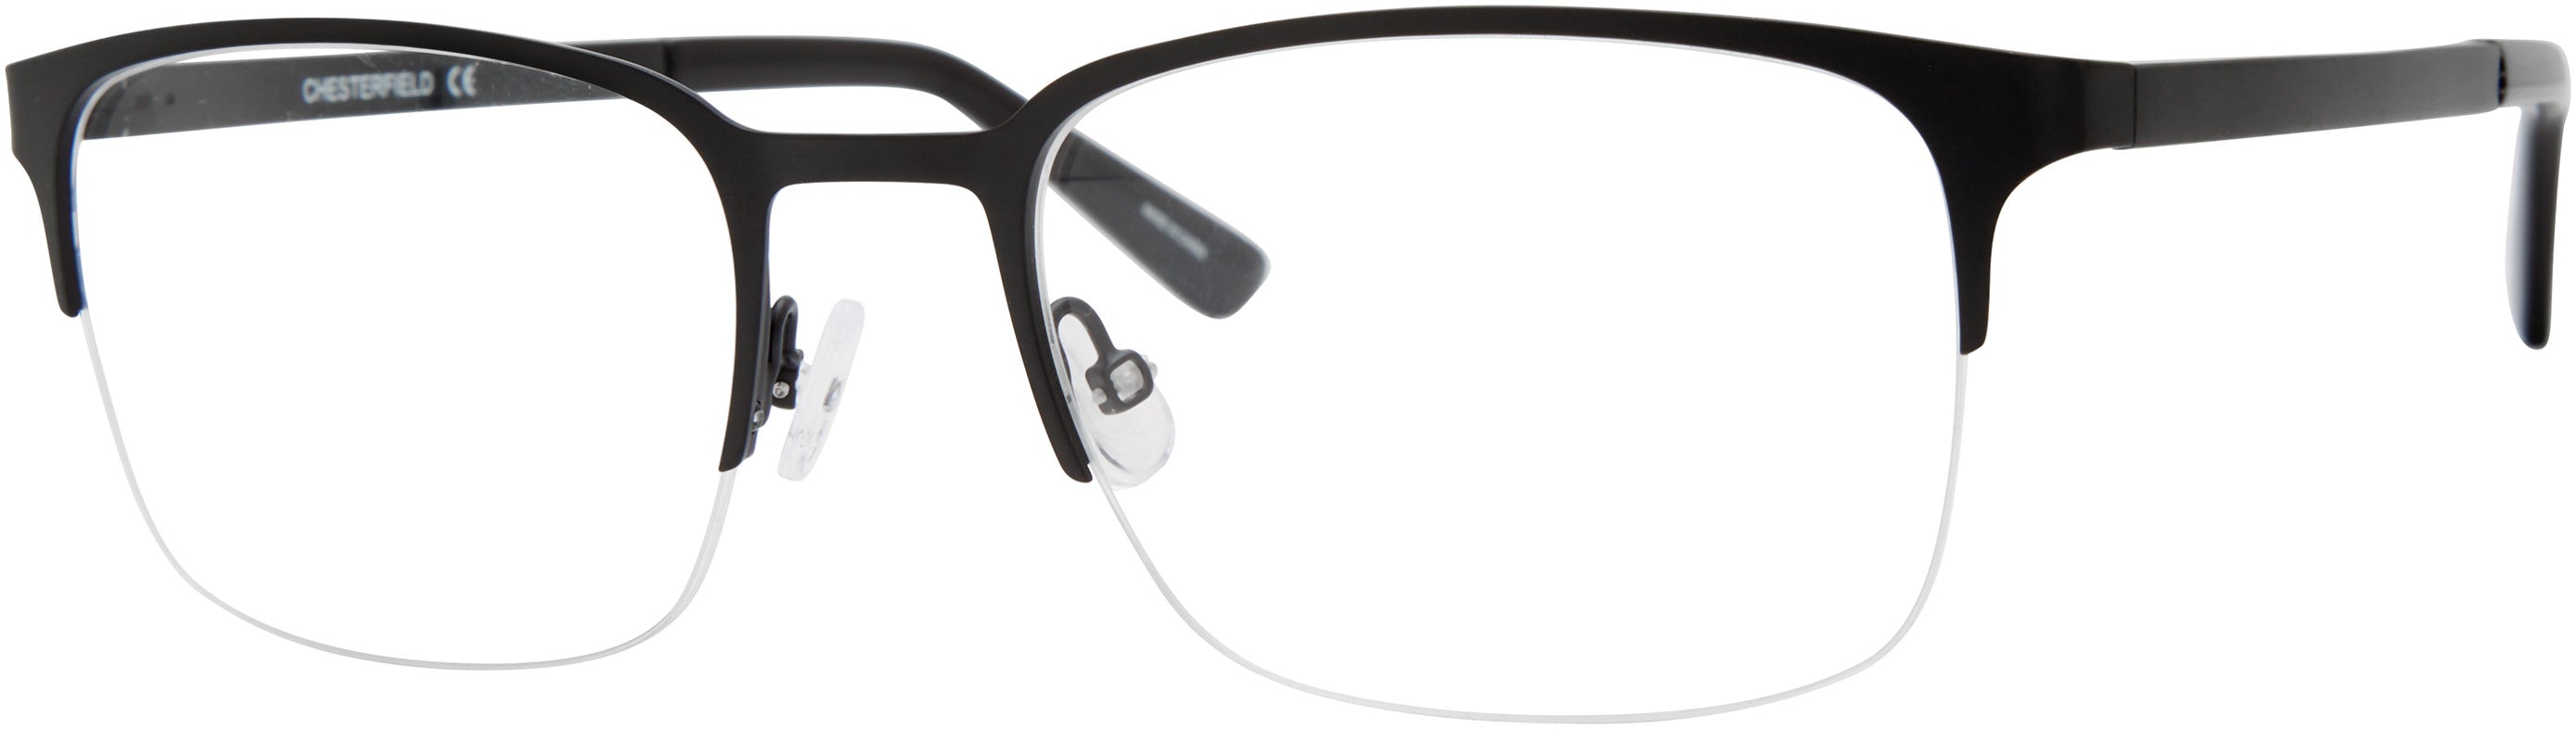  Chesterfield 86XL Rectangular Eyeglasses 0003-0003  Matte Black (00 Demo Lens)